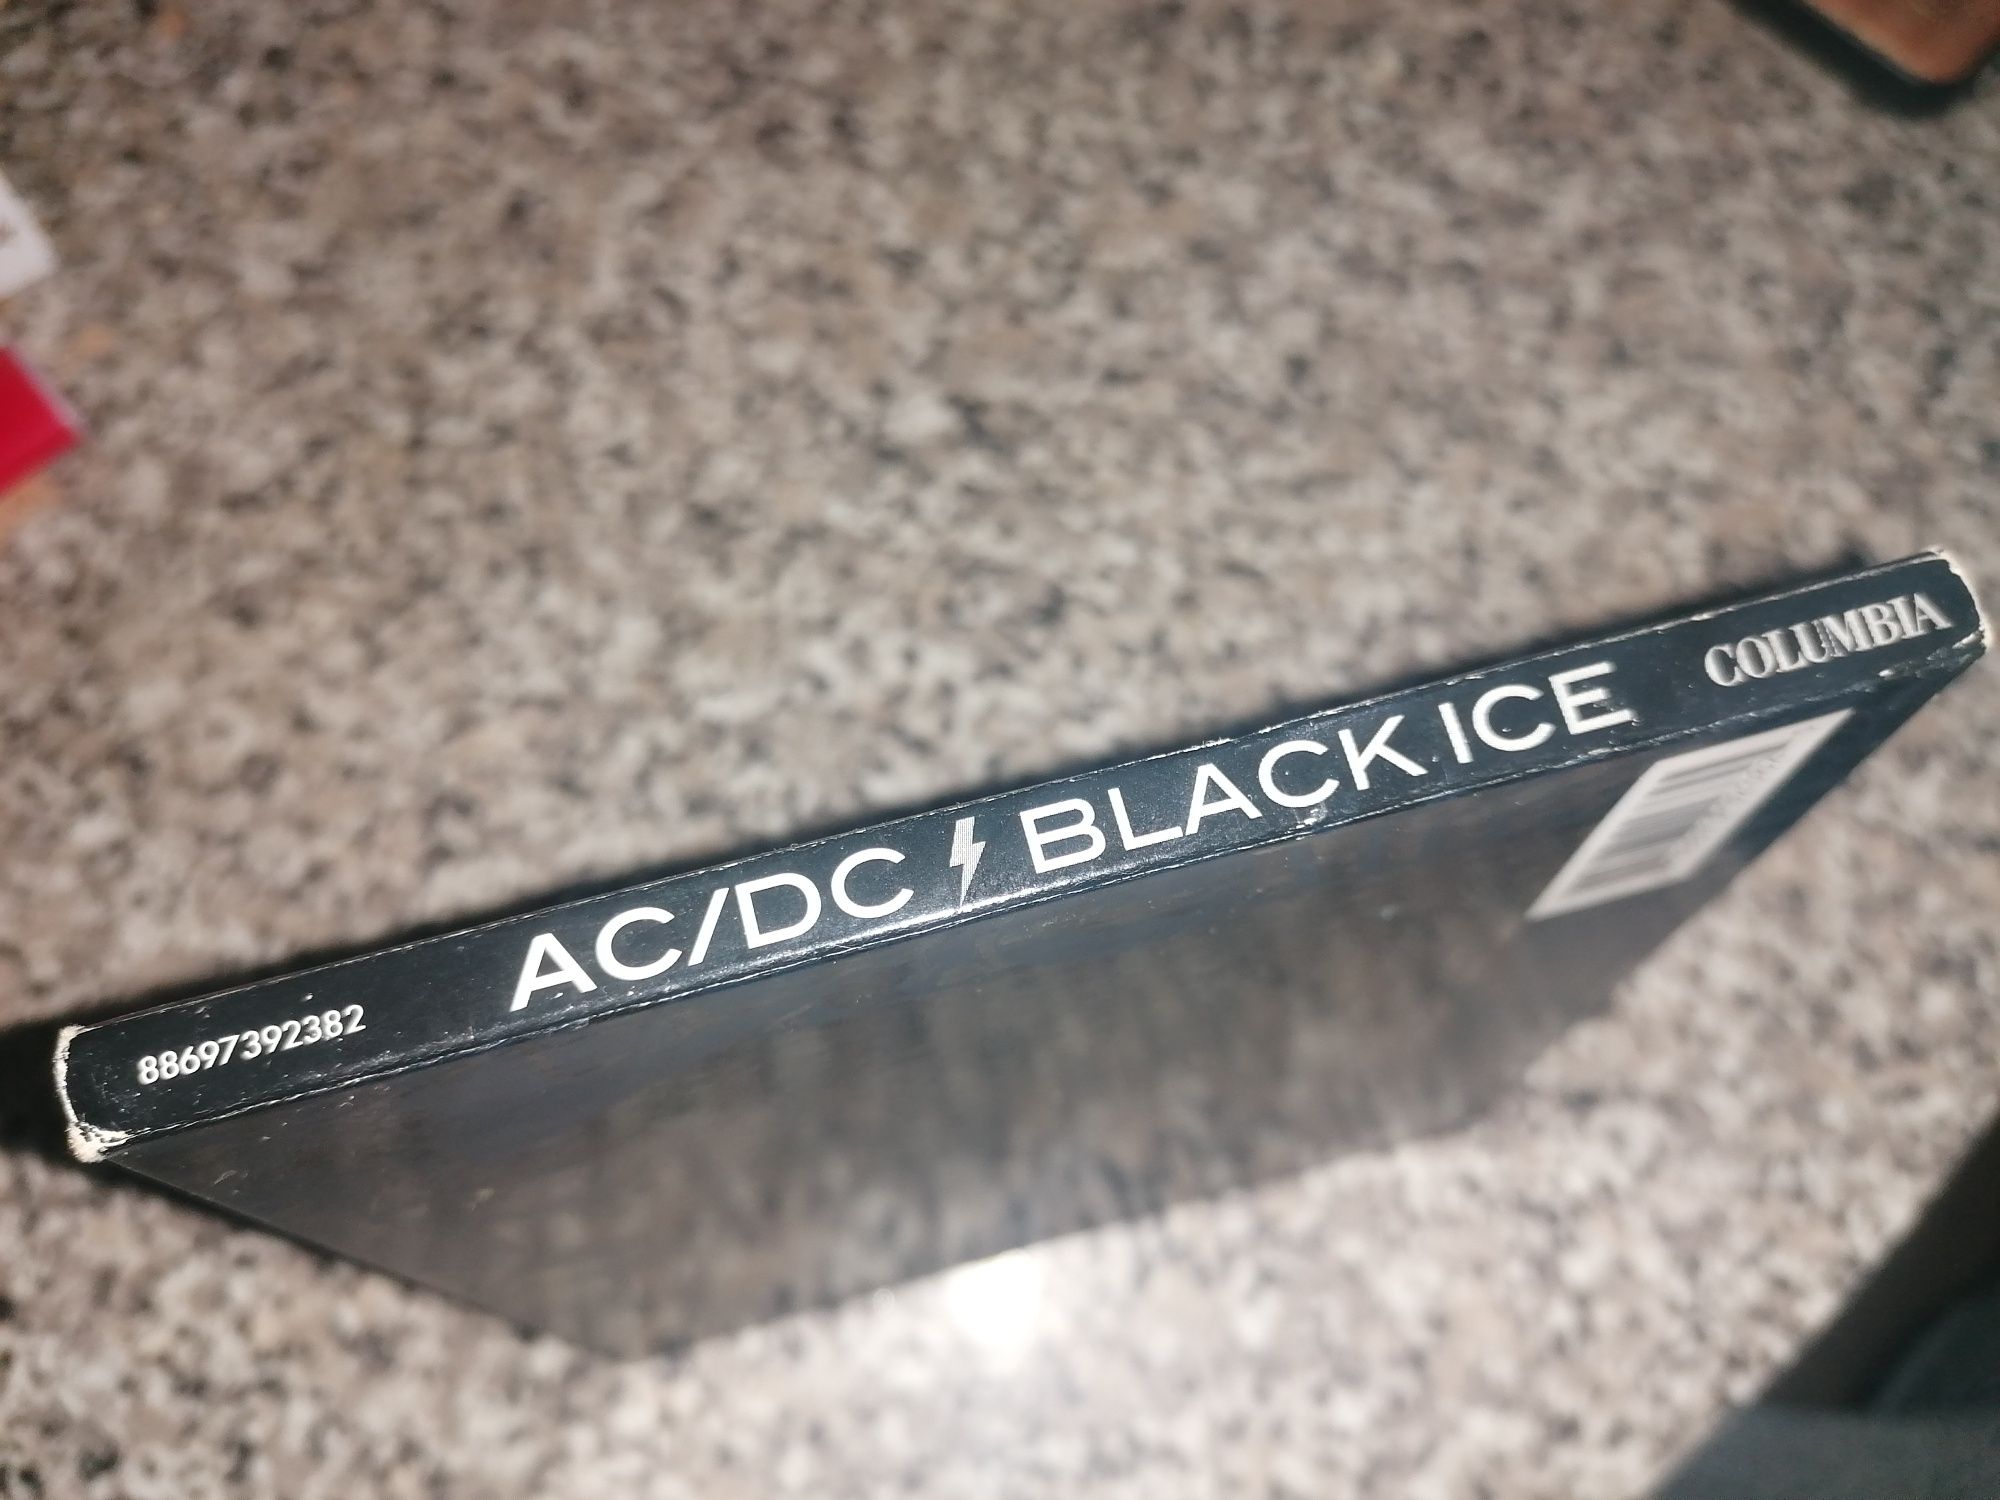 AC DC - Black Ice